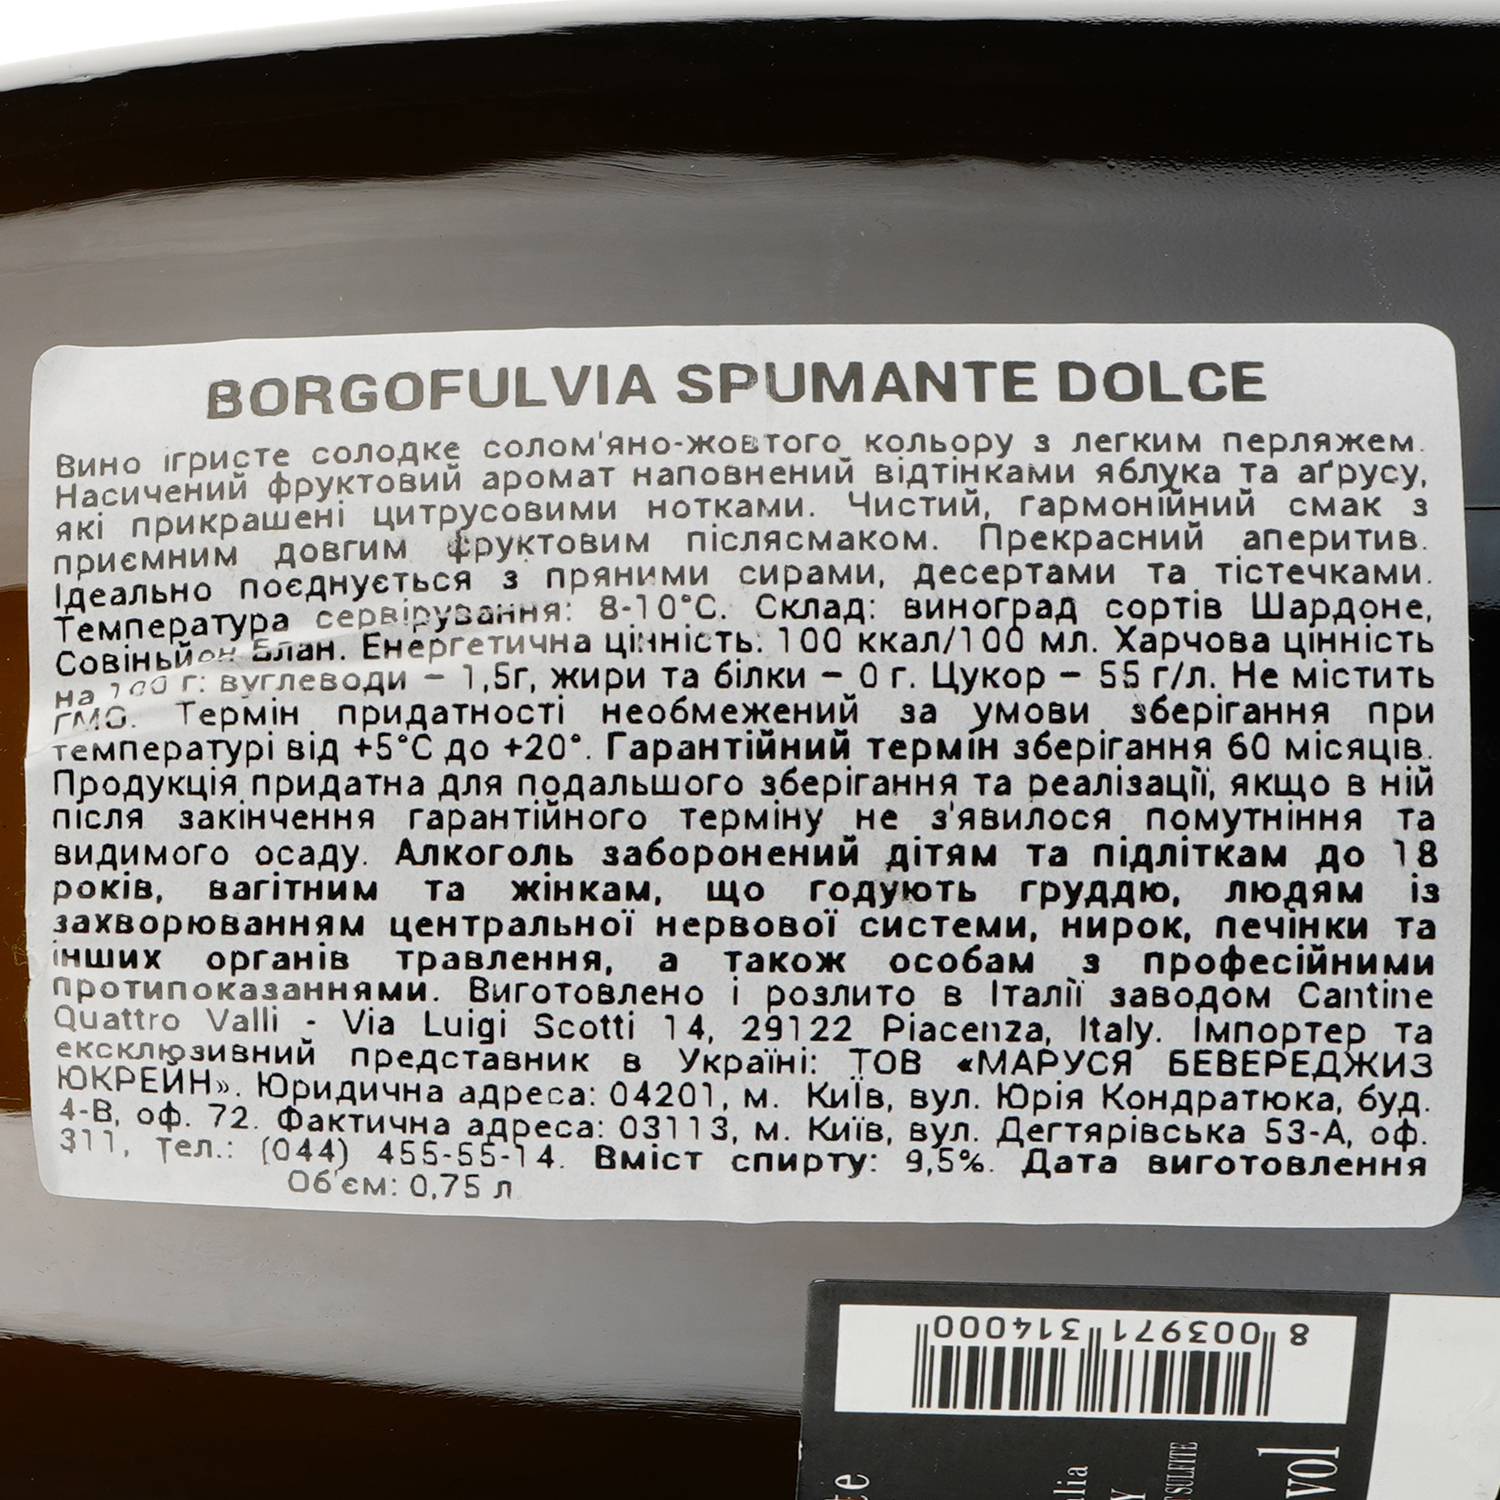 Ігристе вино Borgofulvia Spumante Bianco dolce, біле, напівсолодке, 9,5%, 0,75 л - фото 3